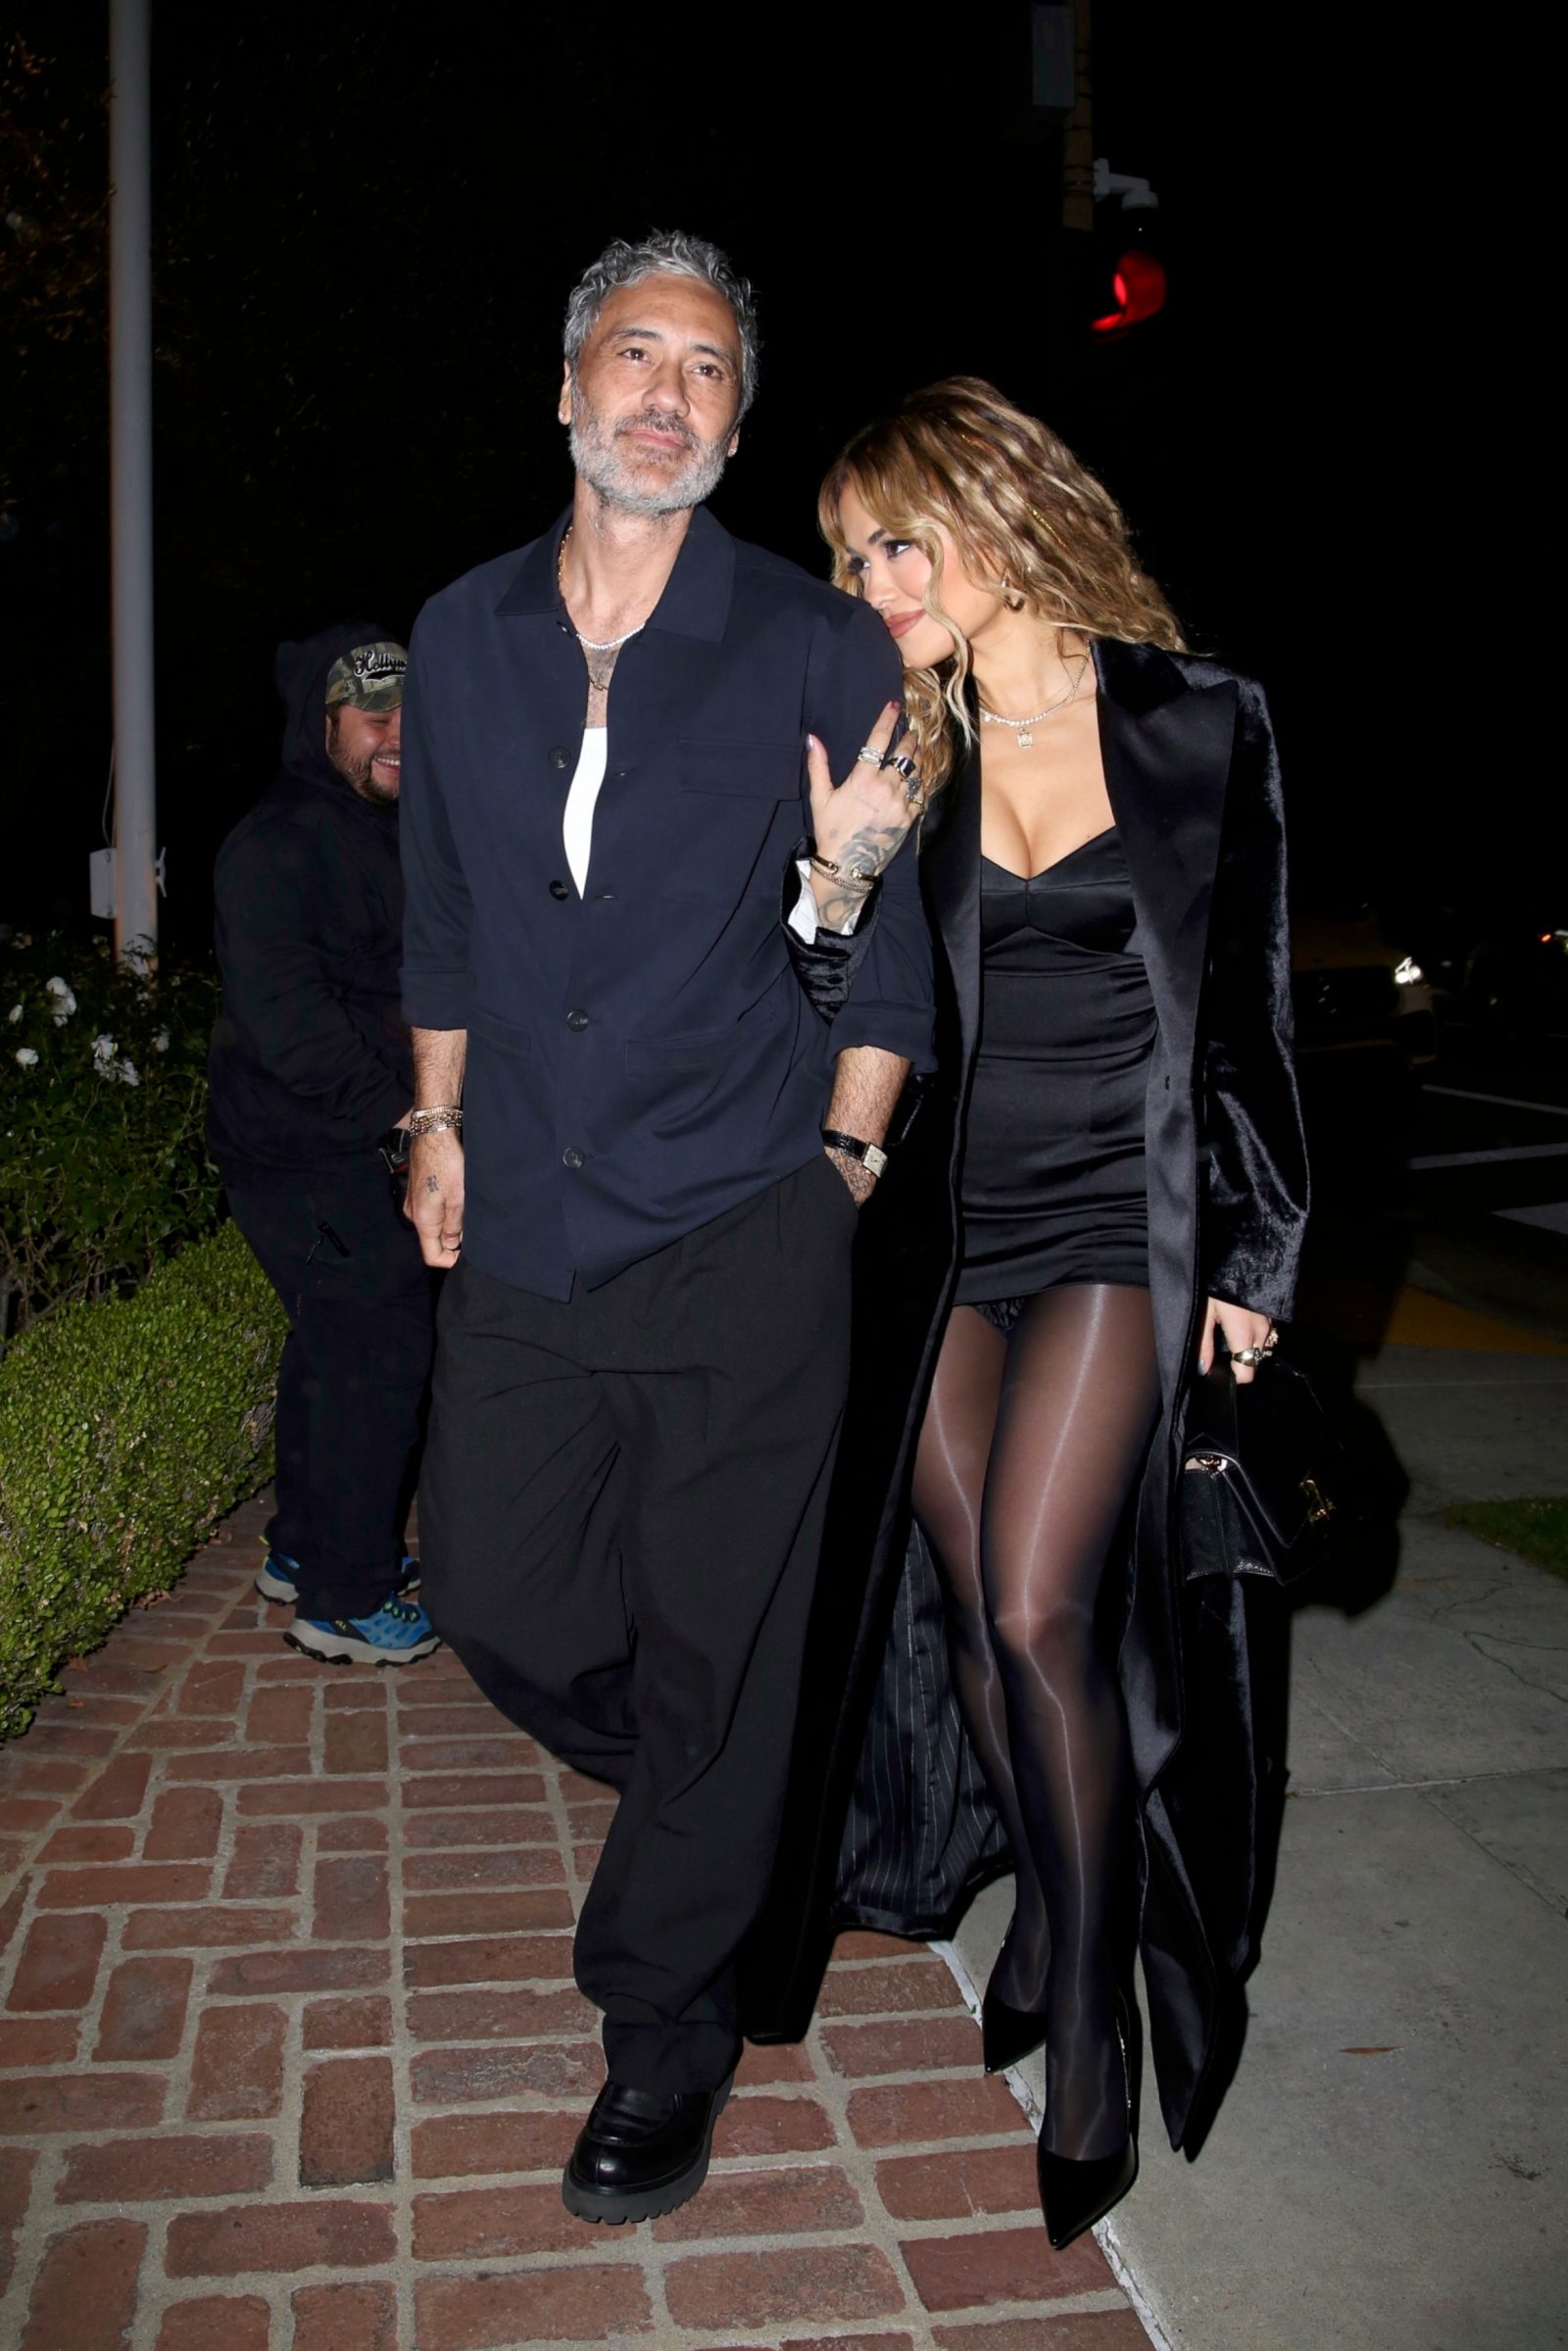 На День рождения к Леонарду ДиКаприо дамы надели очень коротенькие юбочки, а его подружка драные грязные джинсы. Топ фото с вечеринки по случаю Дня рождения Леонардо ДиКаприо